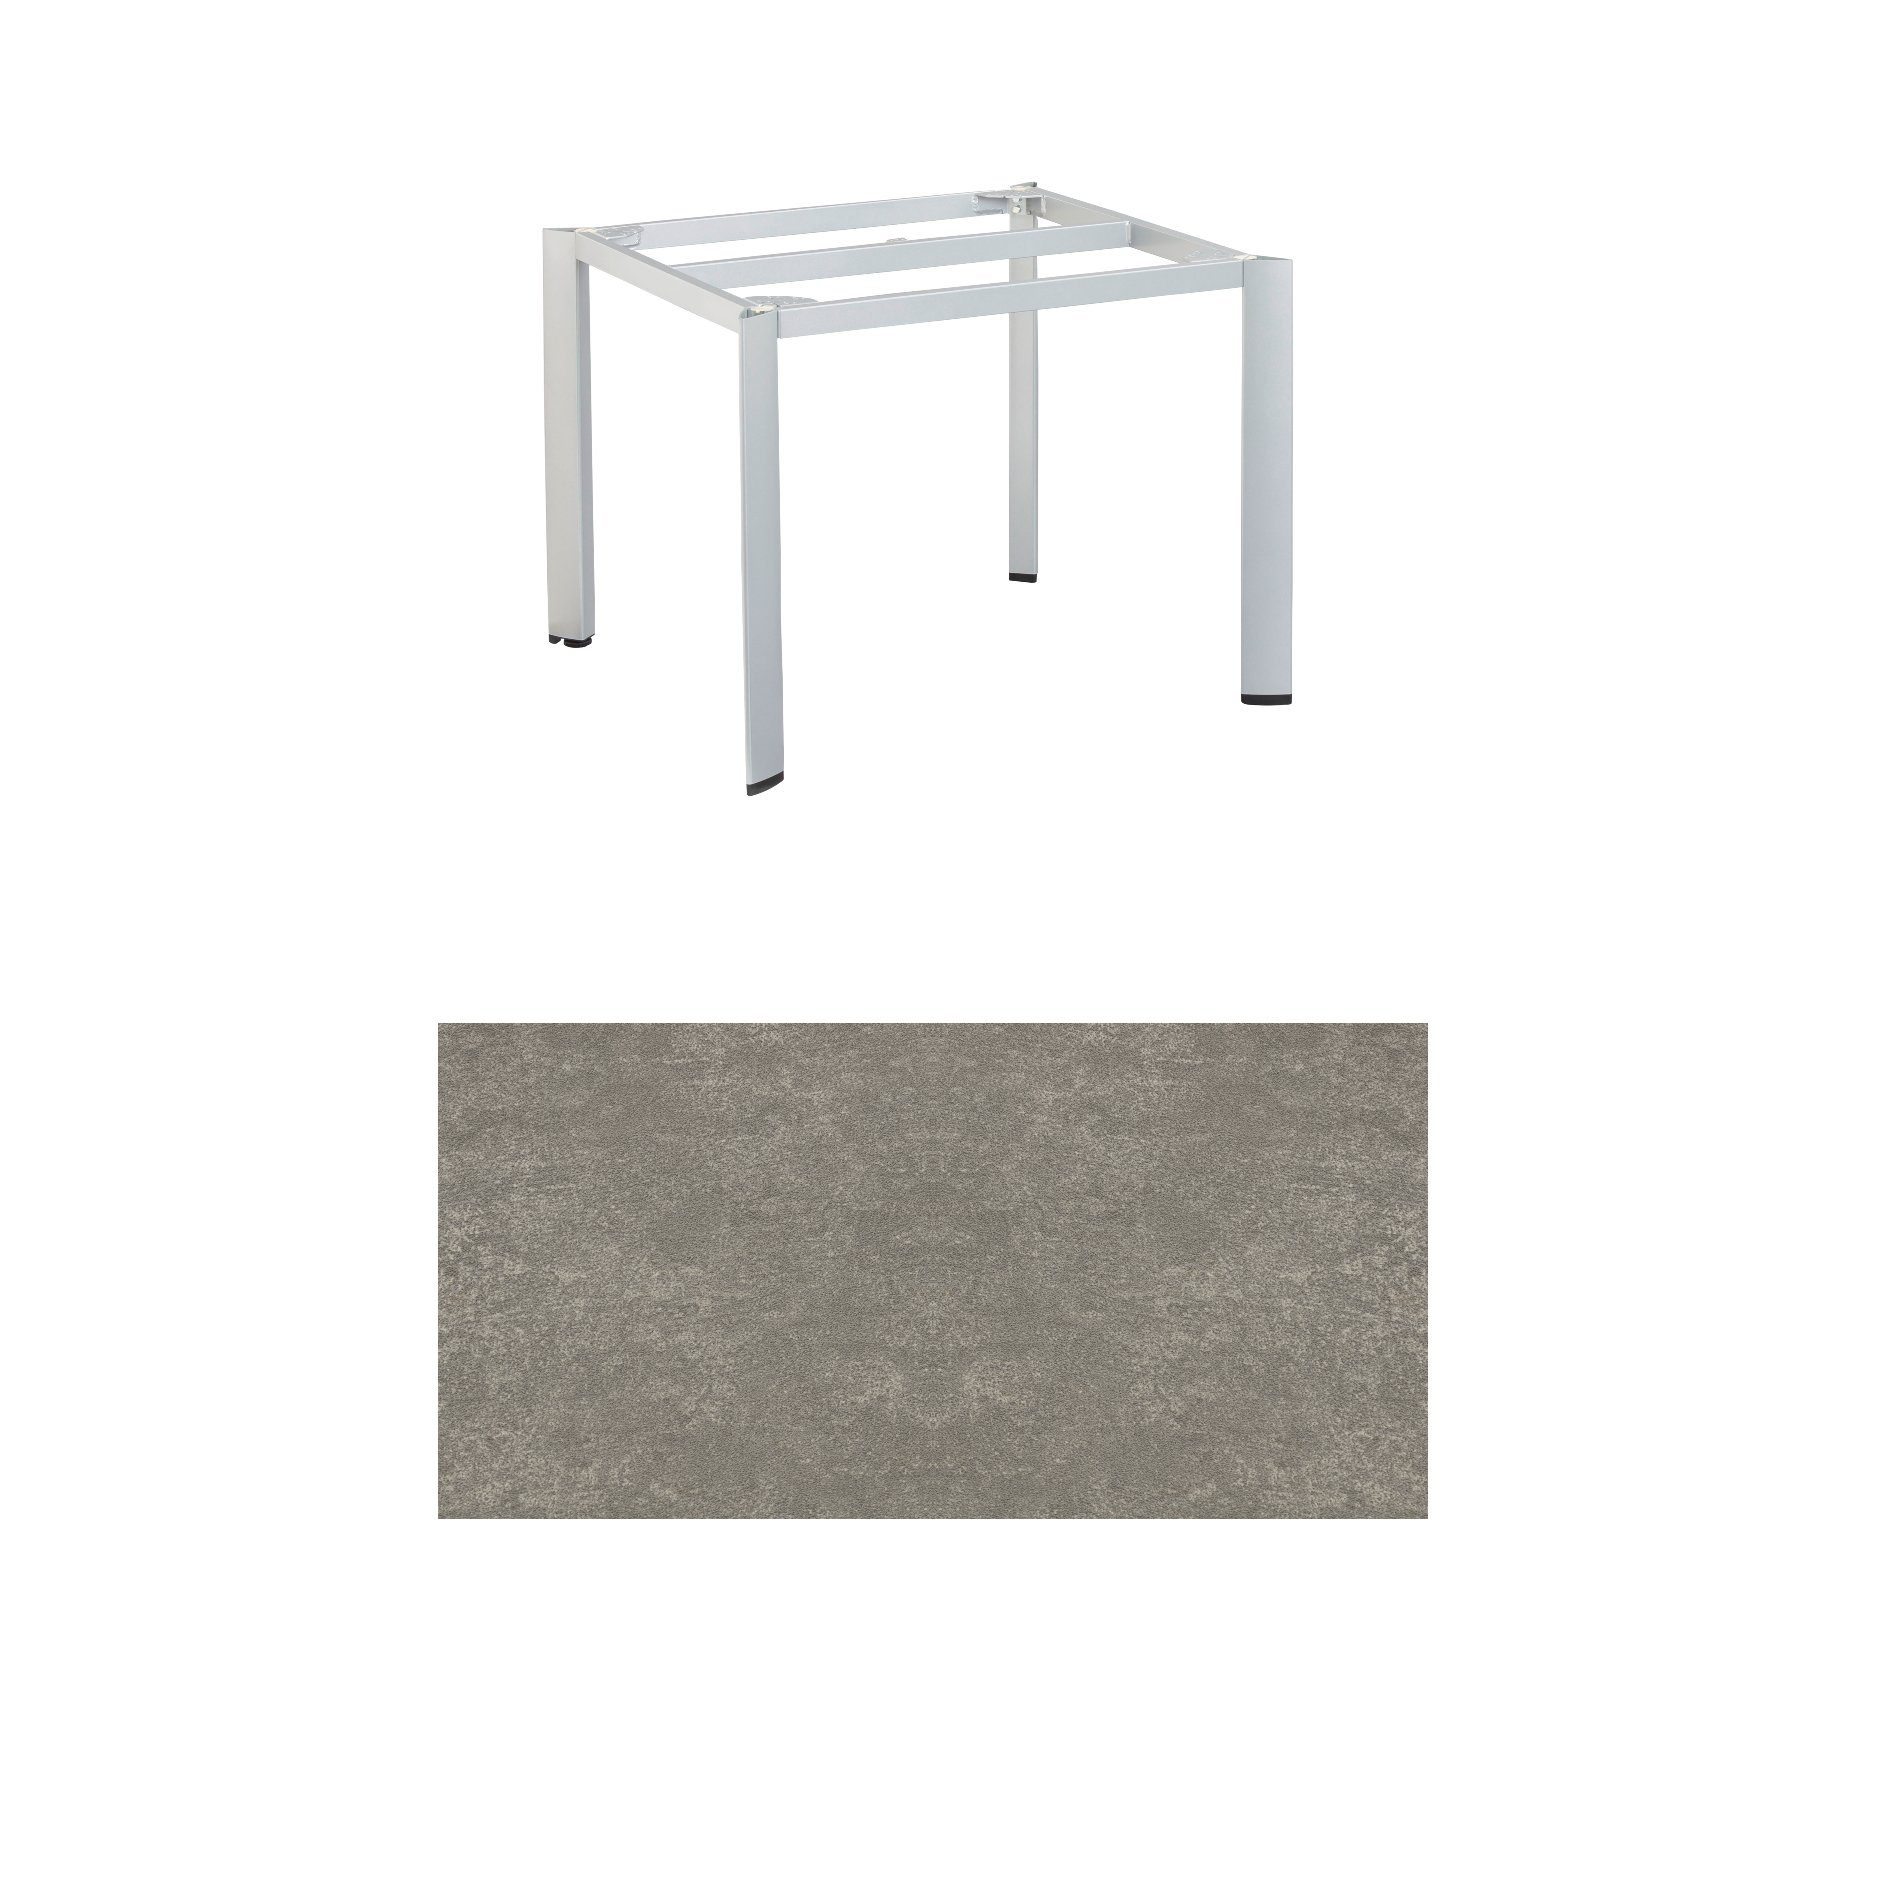 Kettler "Edge" Gartentisch, Tischgestell 95x95cm, Aluminium silber, mit Tischplatte Keramik grau-taupe